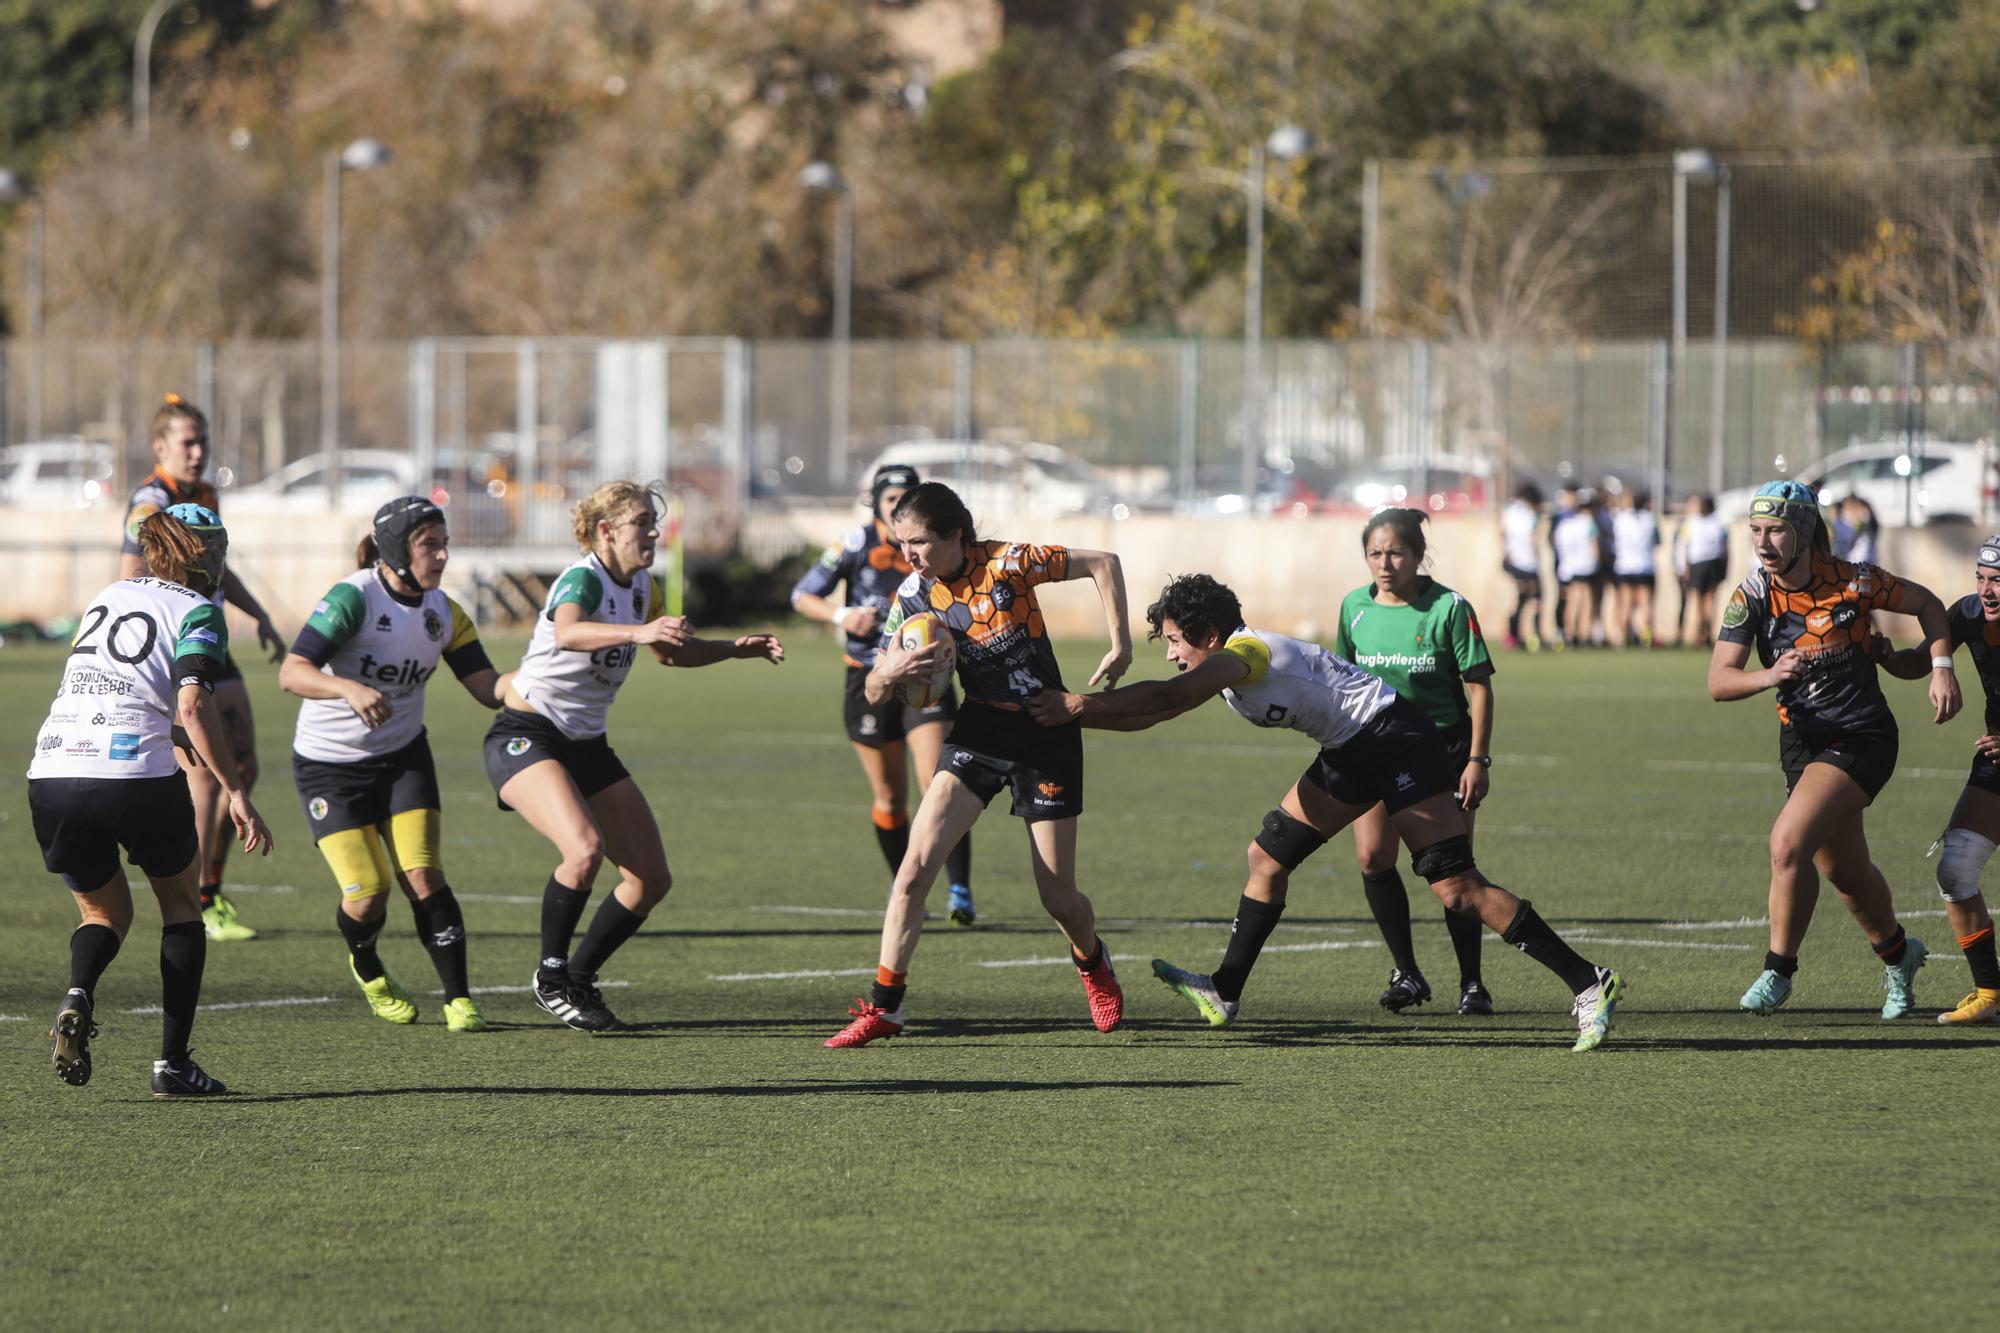 Derbi Teika femenino entre Les Abelles y Rugby Turia (12-18)